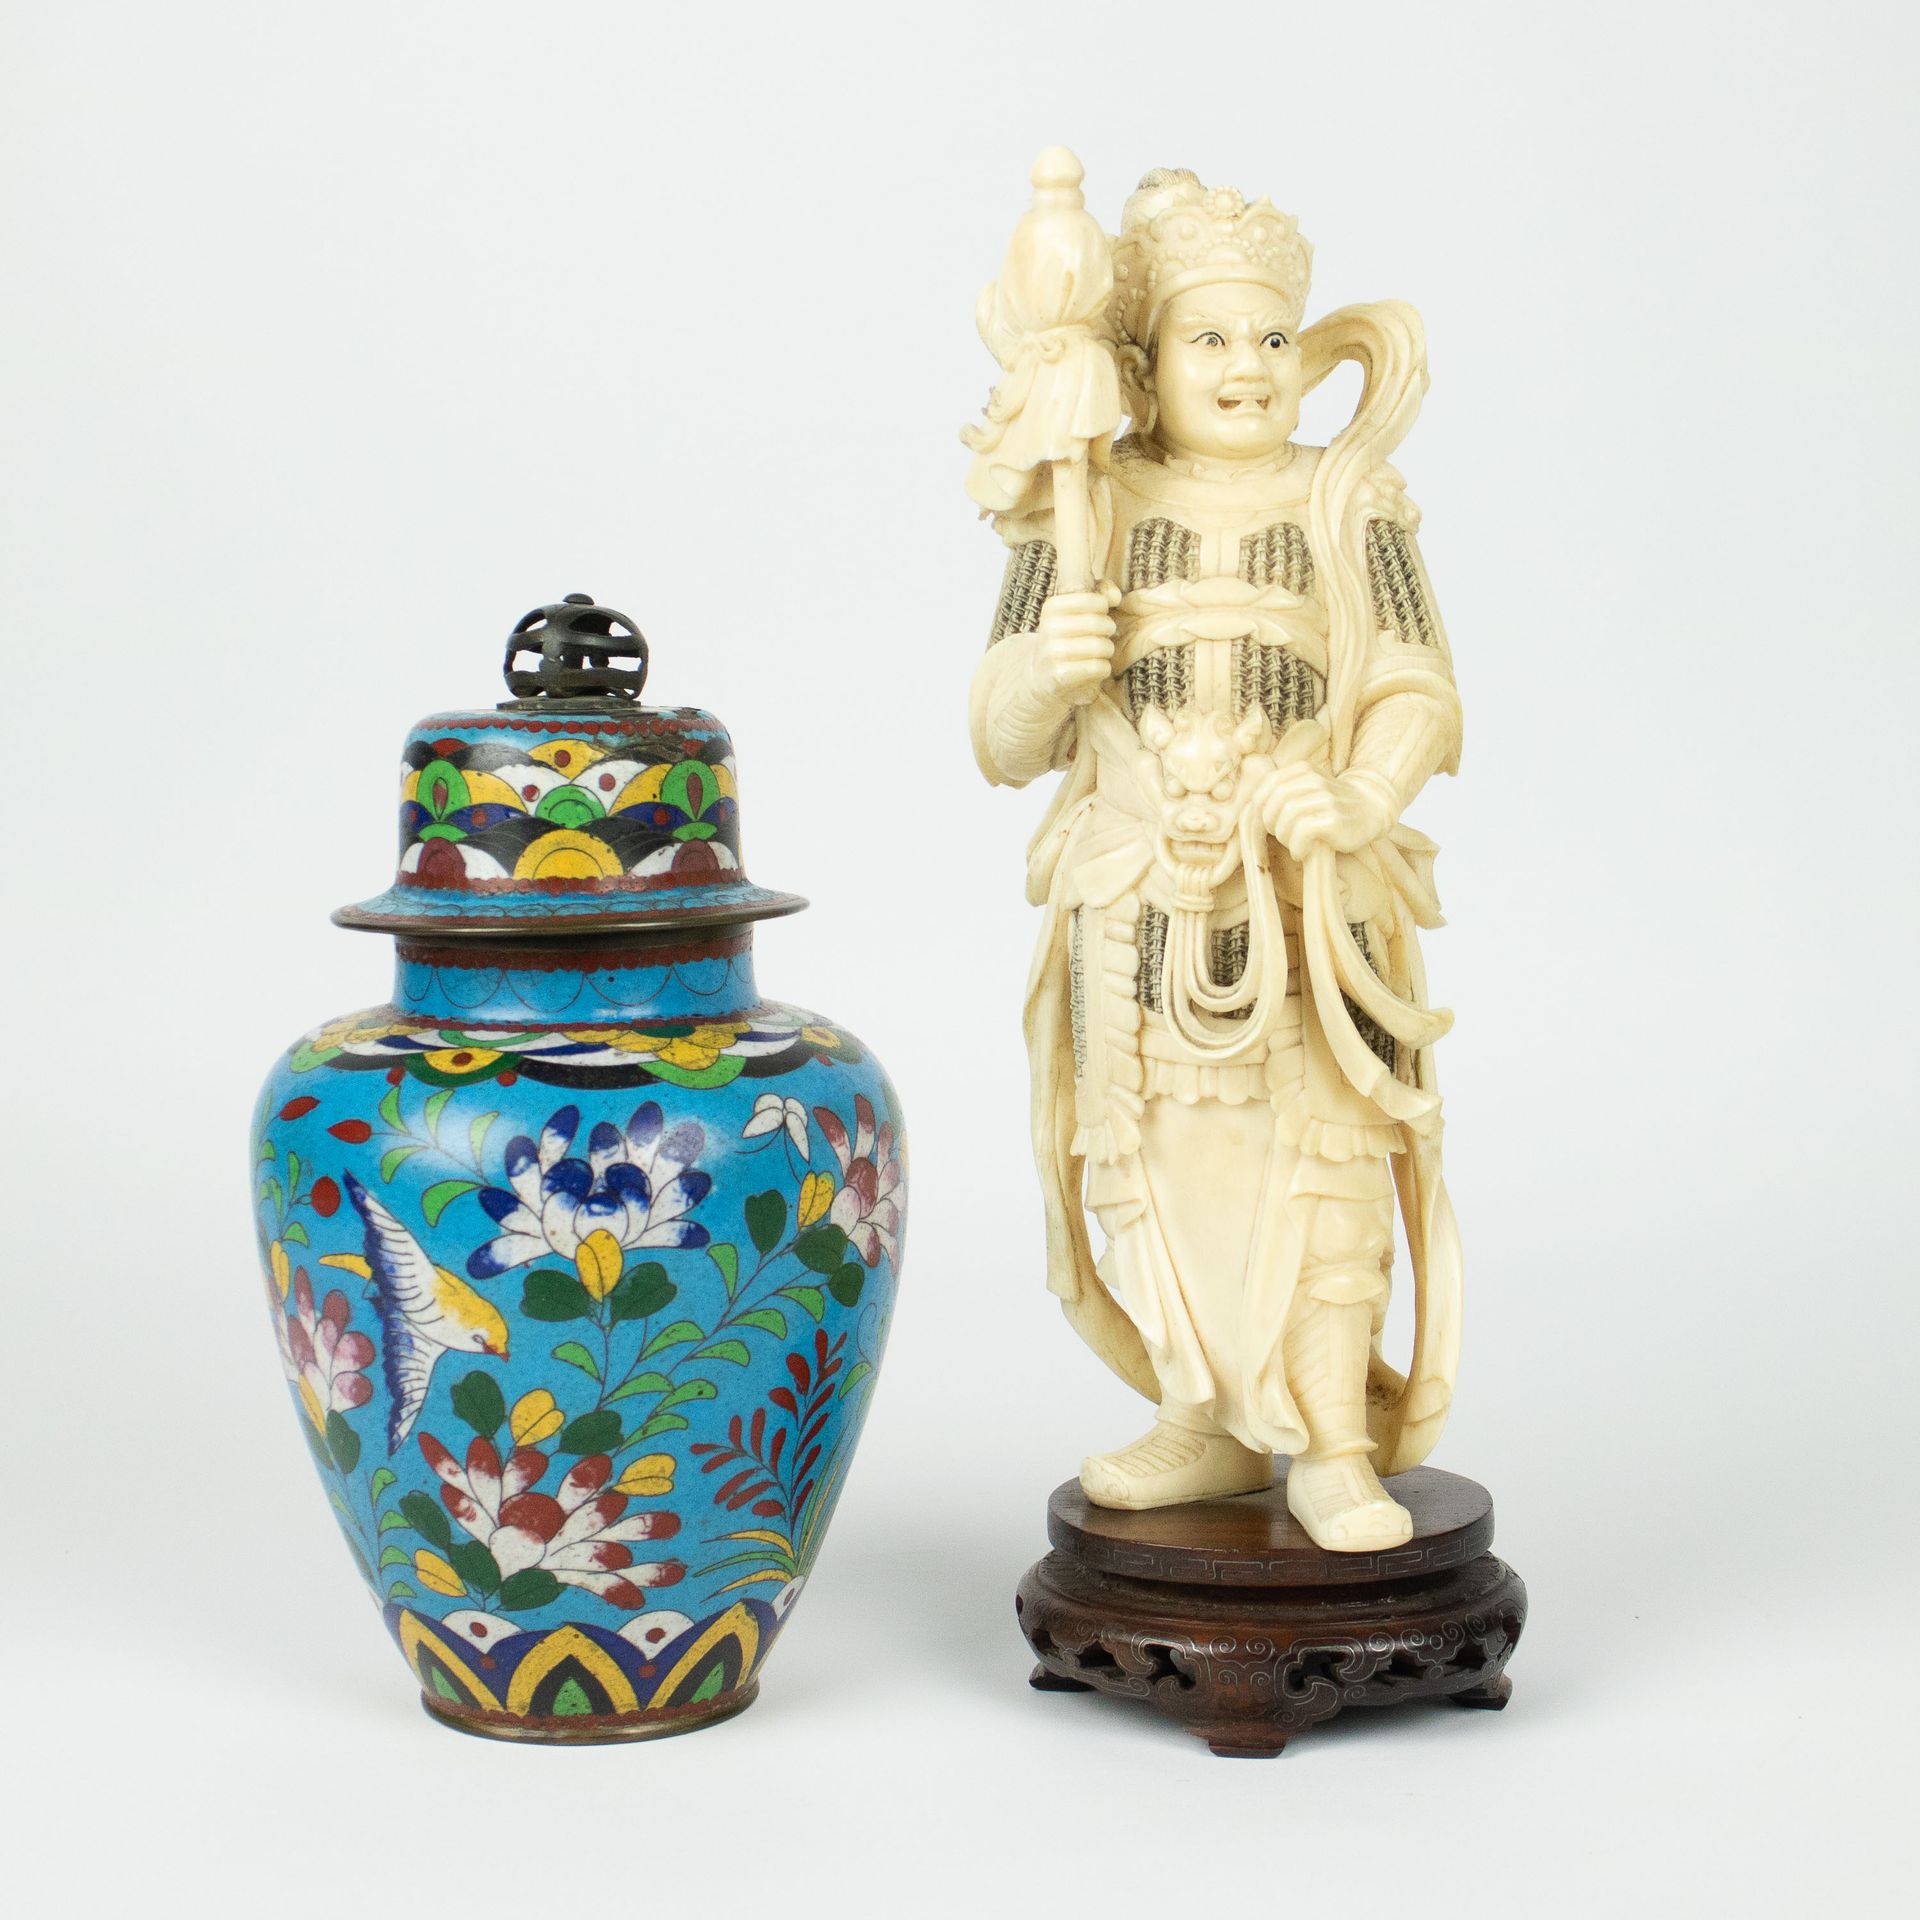 Ivory figure possibly depicting Ehr Lang Shen + cloisonné lidded vase 玉皇大帝的侄子二郎神&hellip;